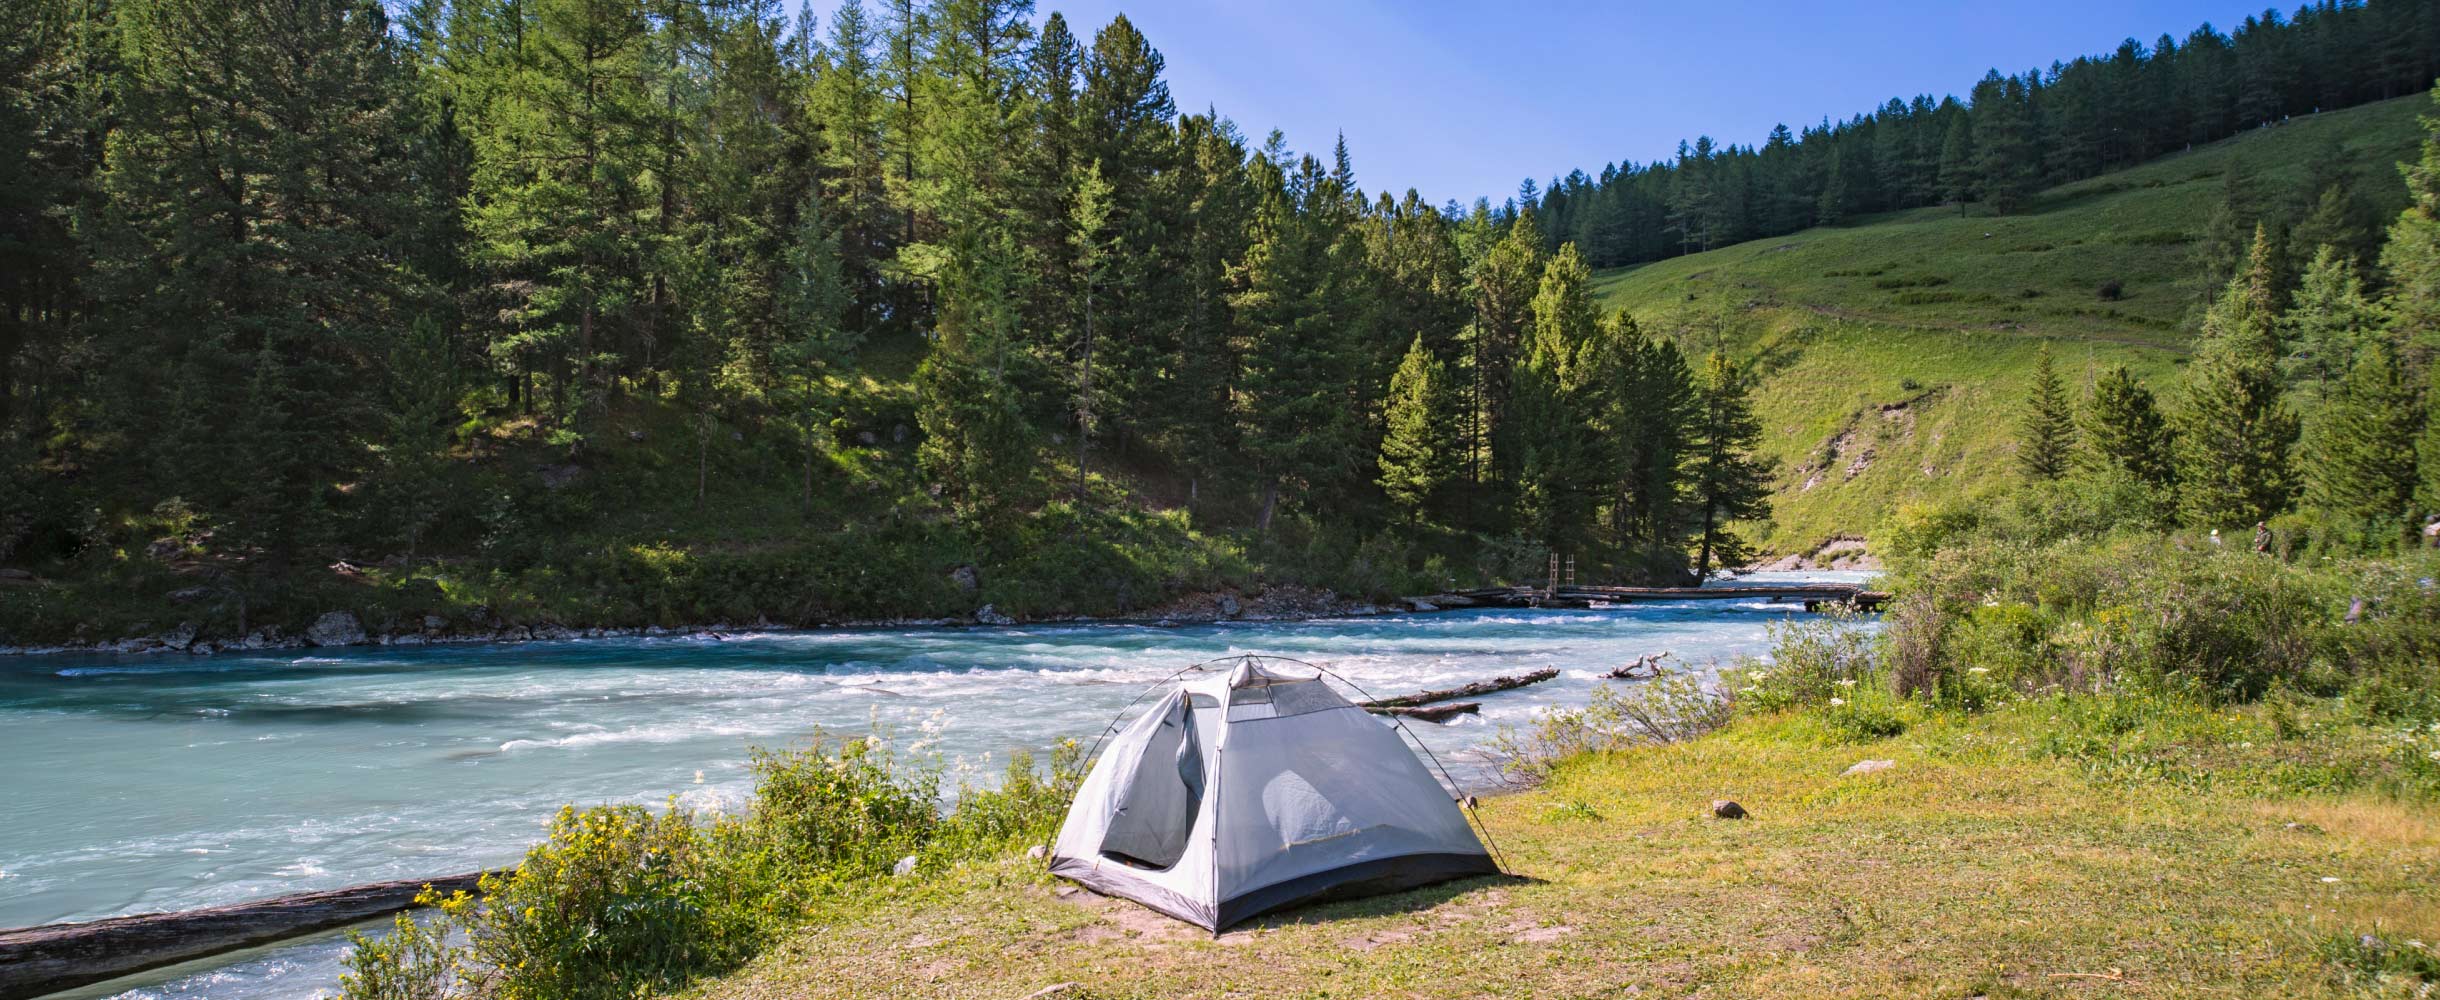 Где шикарно отдохнуть в России с палаткой: 10 проверенных мест